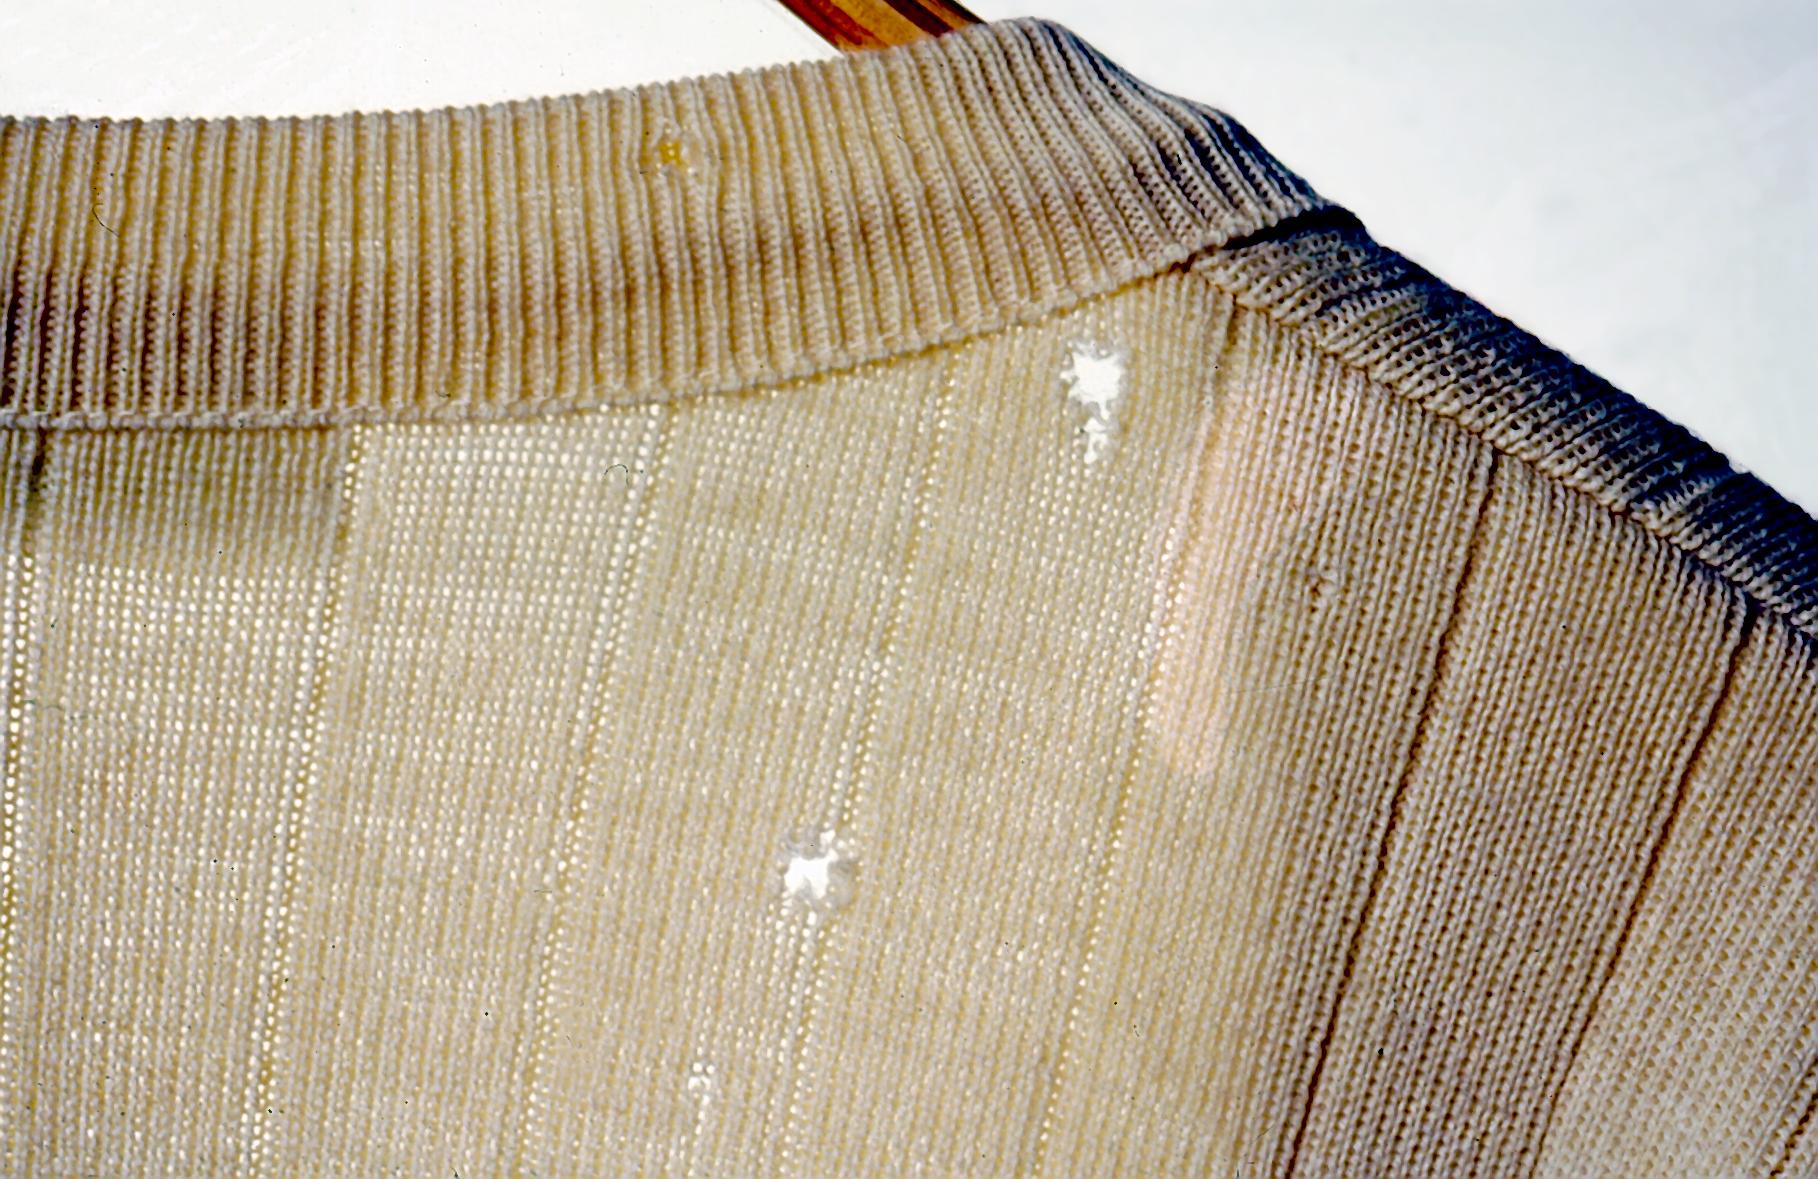 Turkiskuoriaisen tekemiä reikiä tekstiilissä